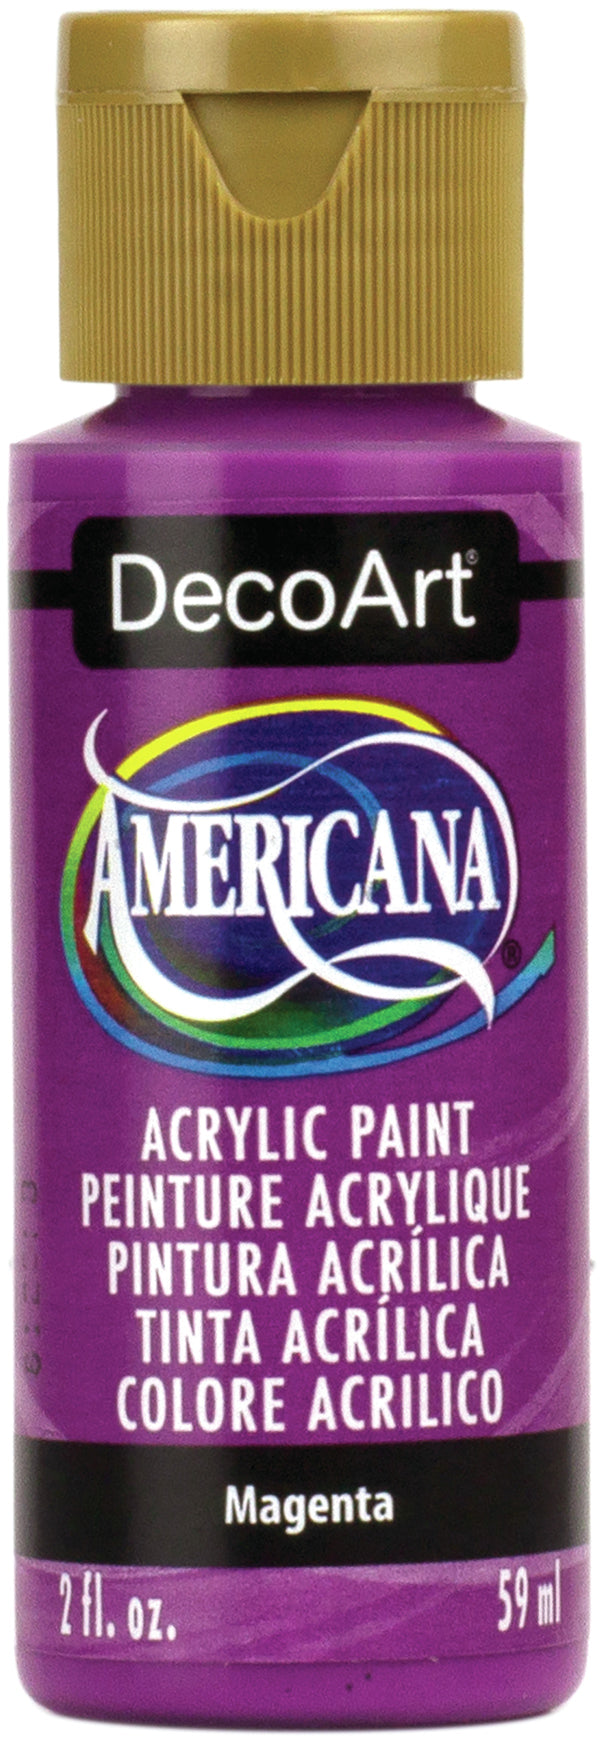 Americana Acrylic Paint 2oz - Magenta